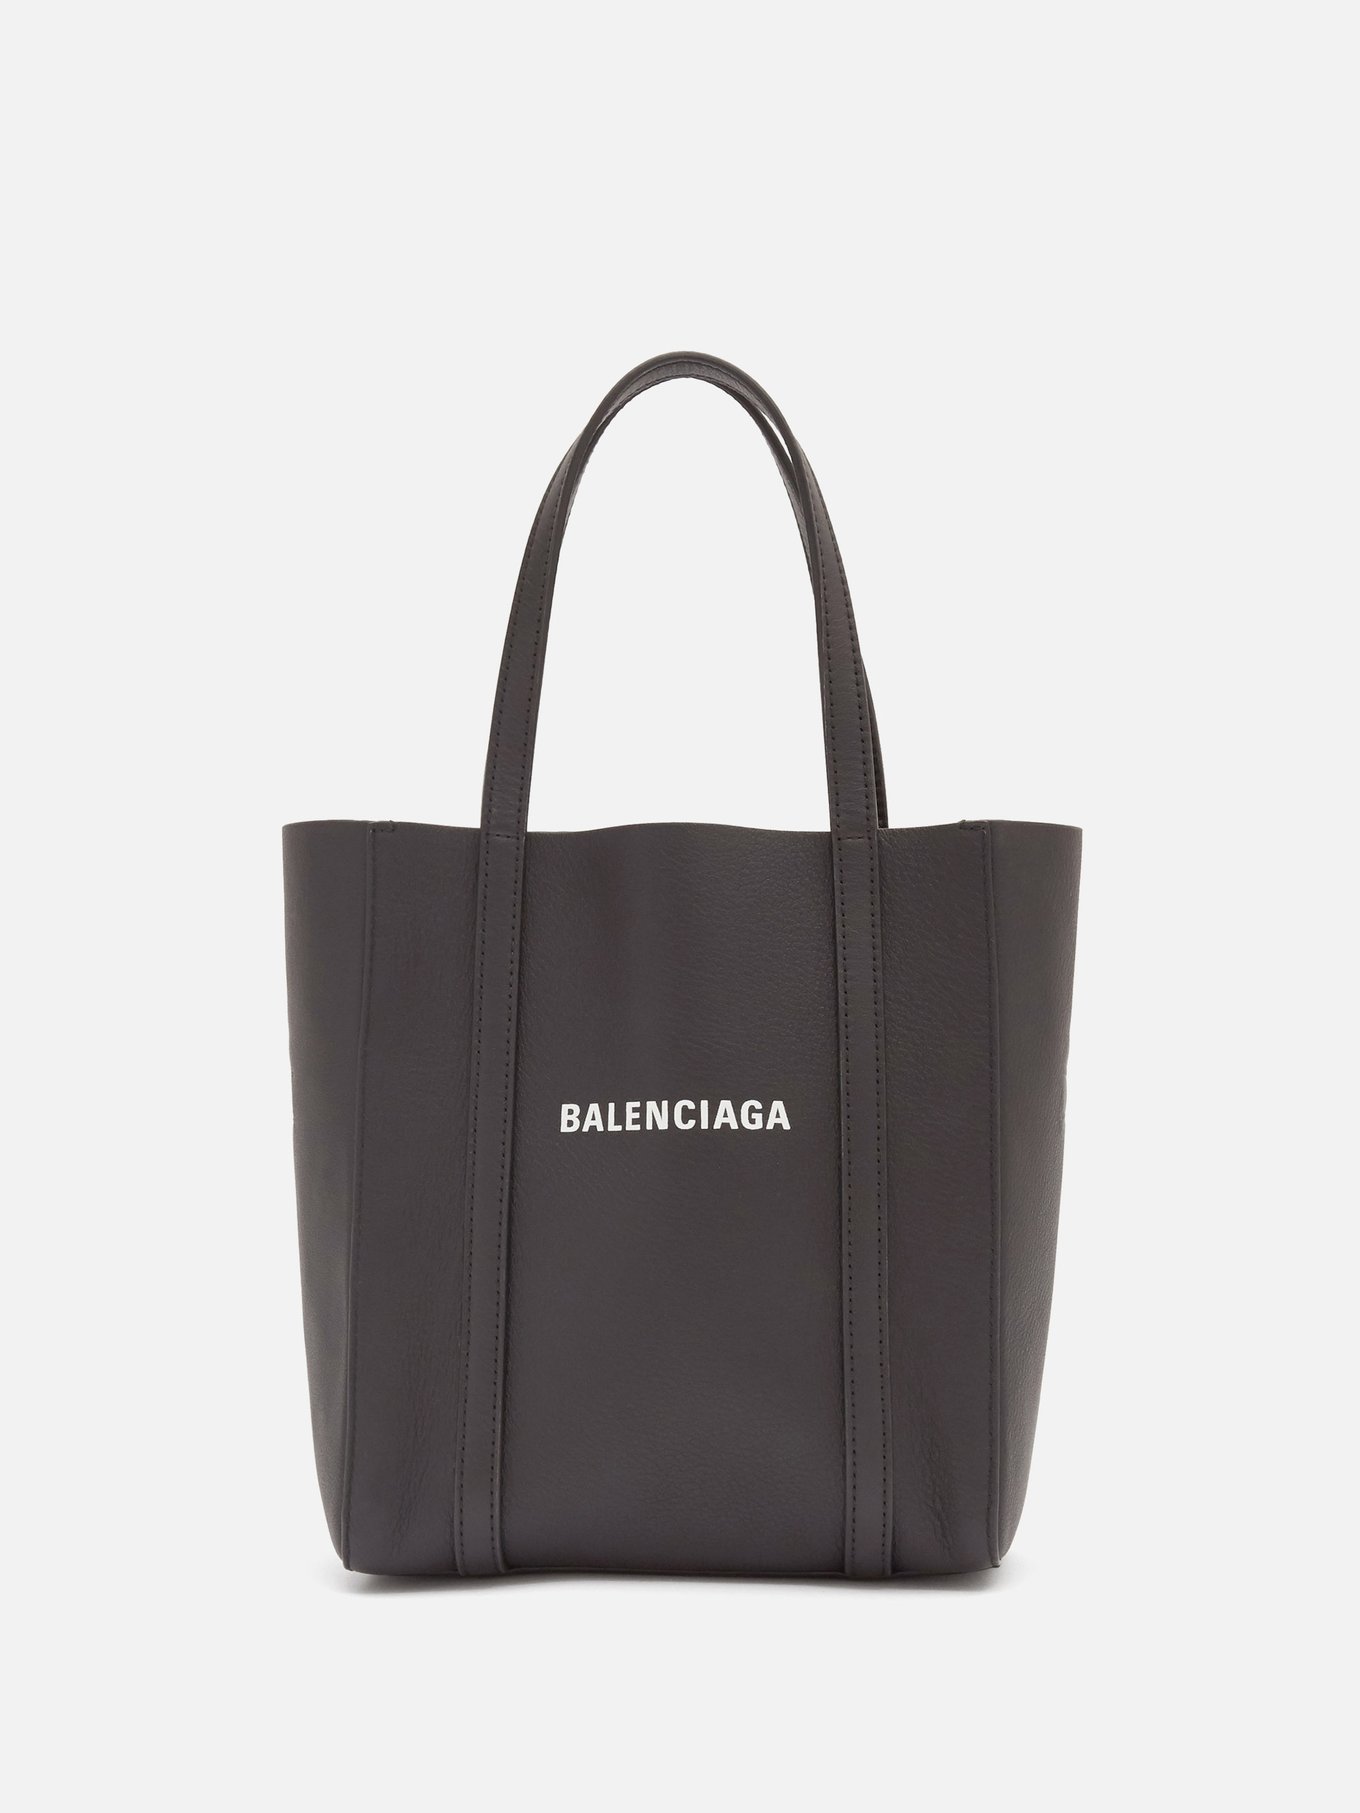 Balenciaga Bag Prices